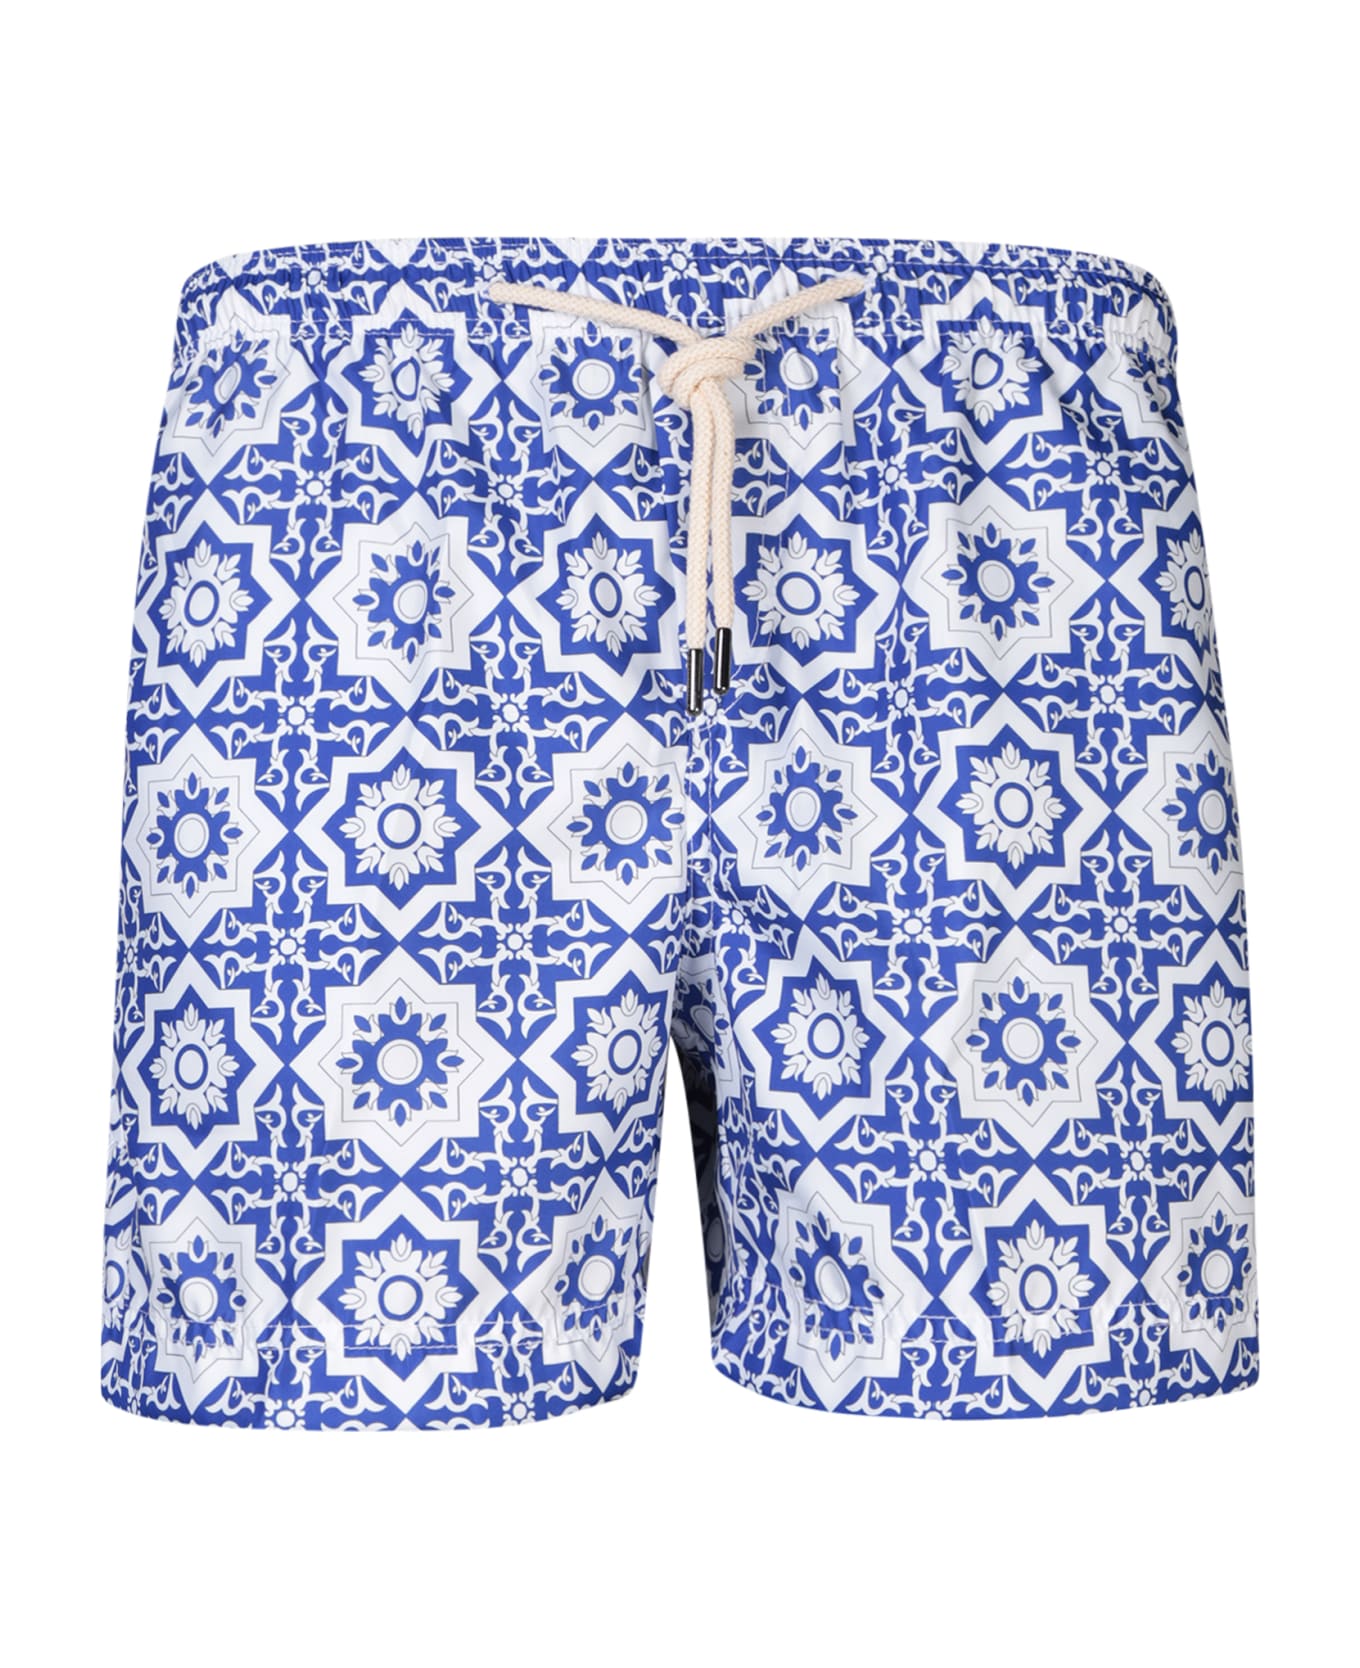 Peninsula Swimwear Patterned Swim Trunks In White/blue By Peninsula - Blue 水着